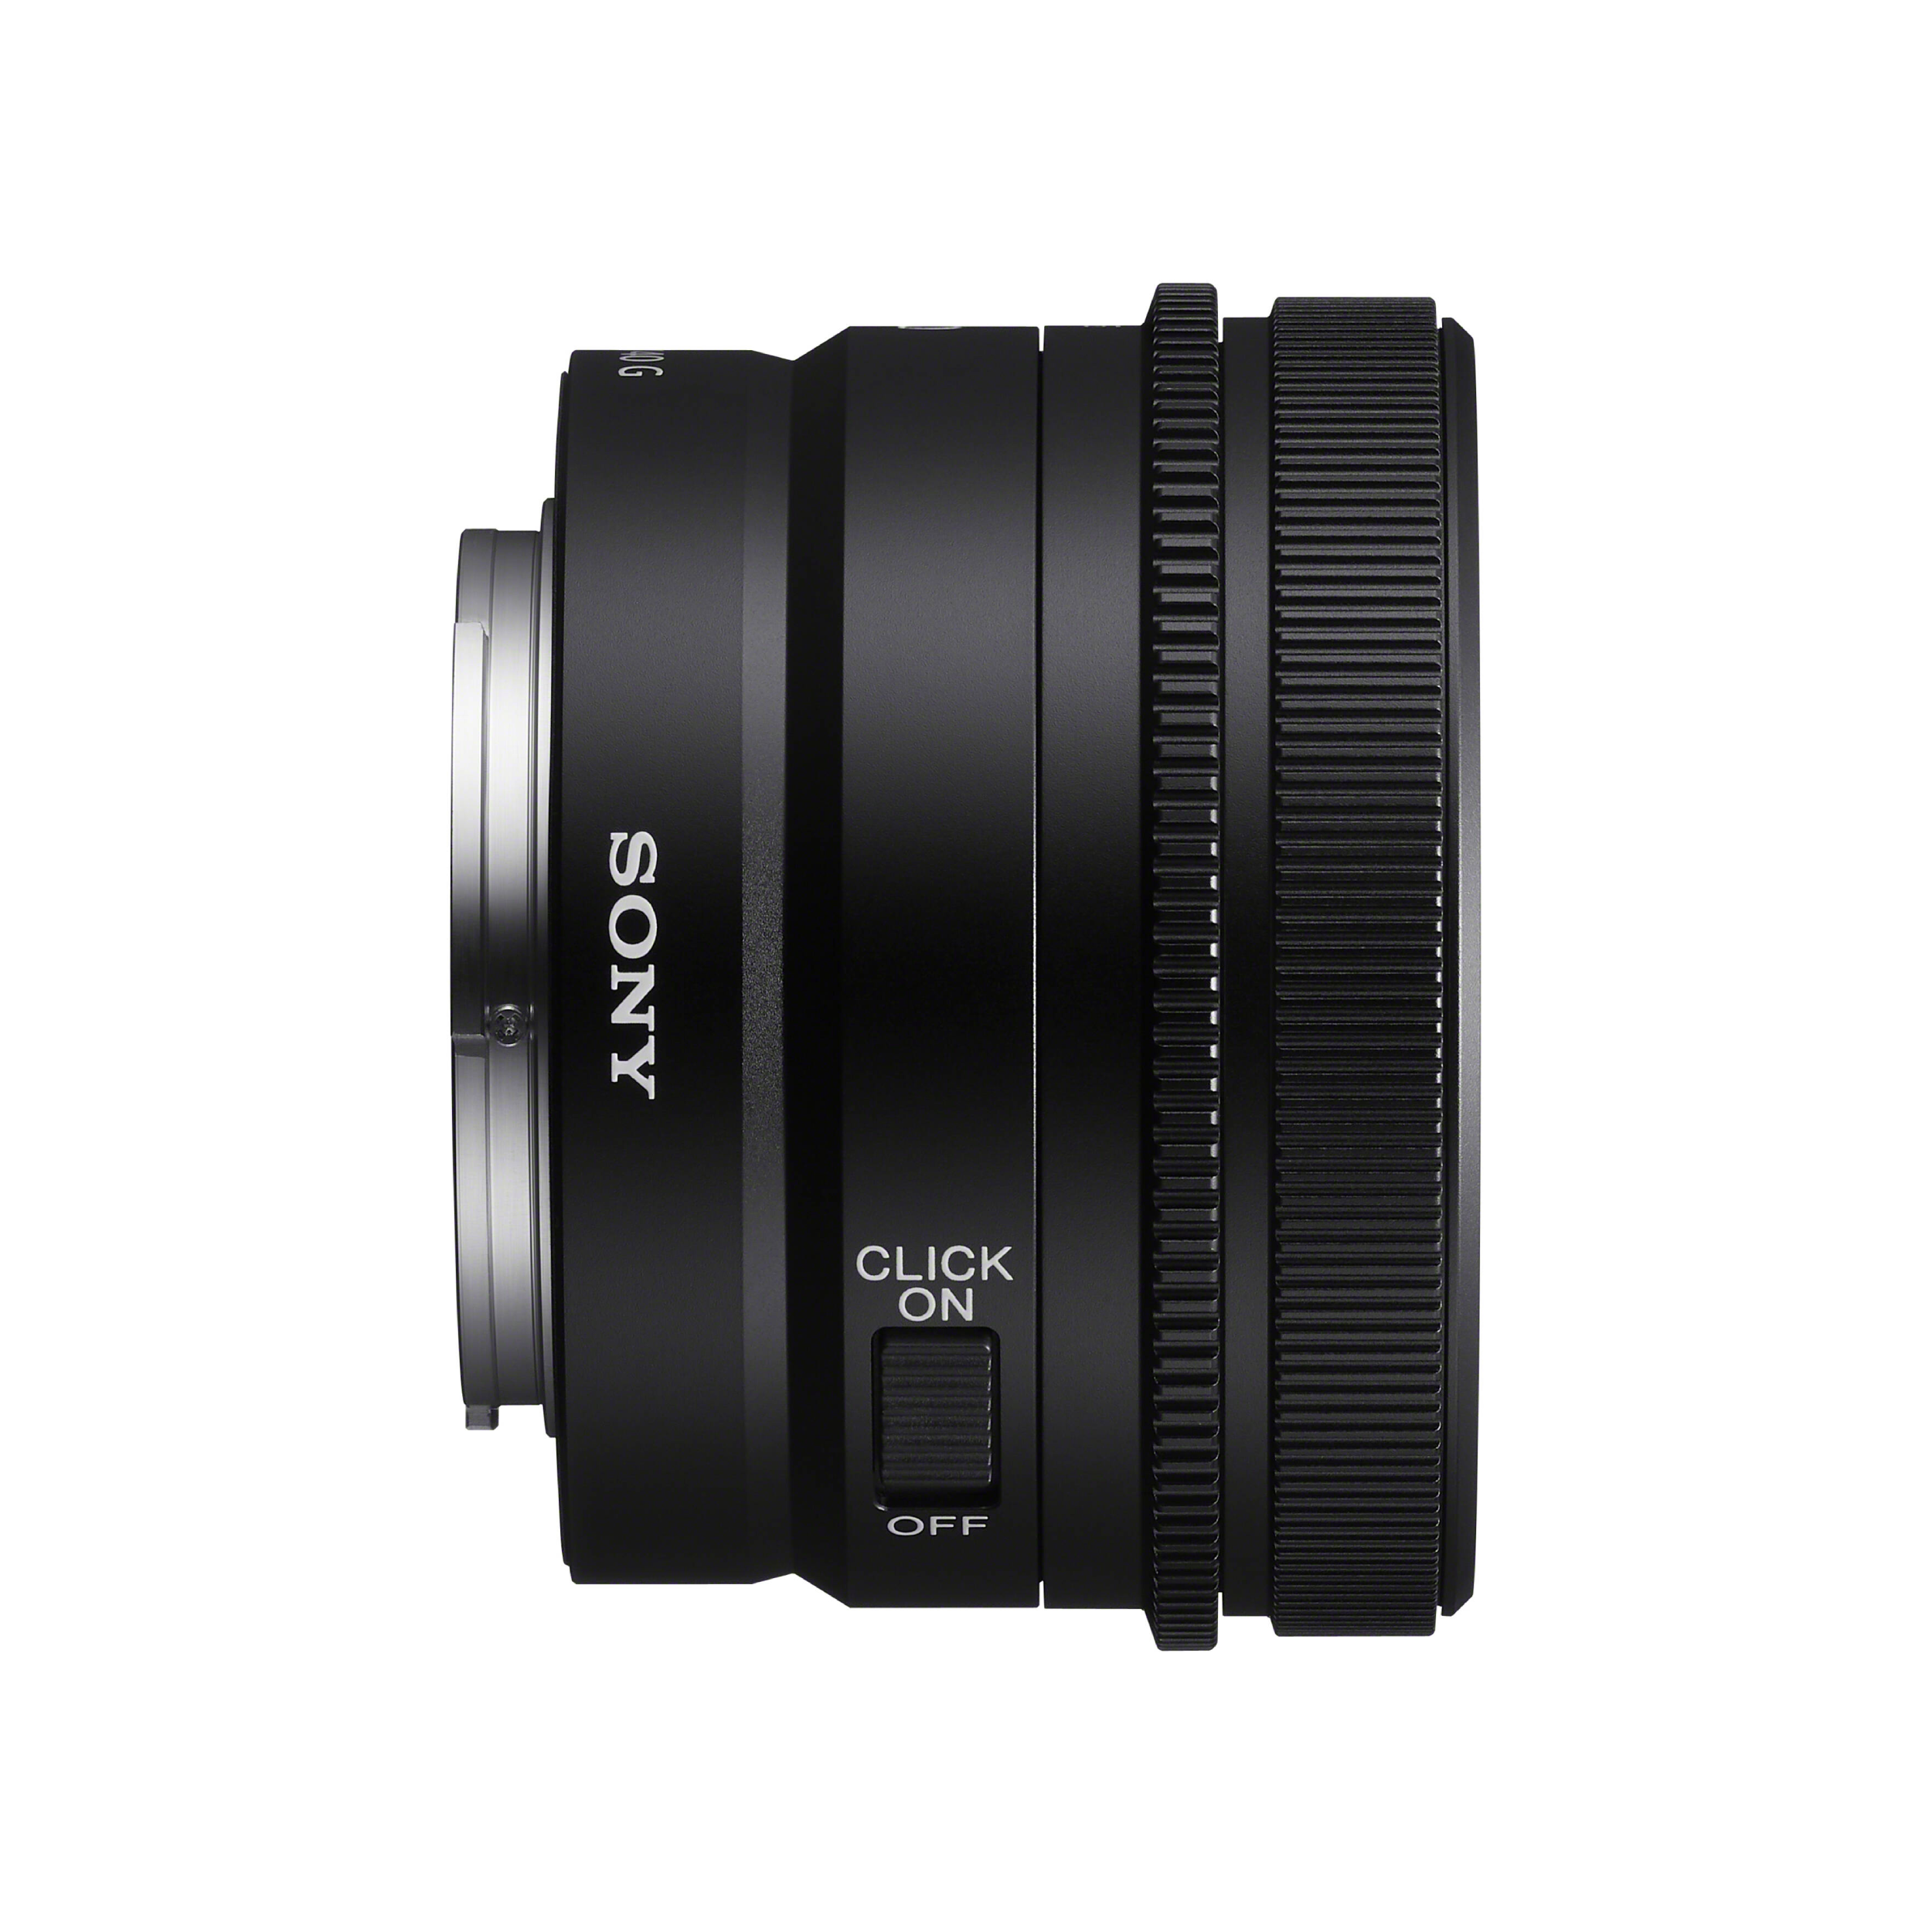 SONY SEL40F25G FE 40 mm f / 2,5 g Lens